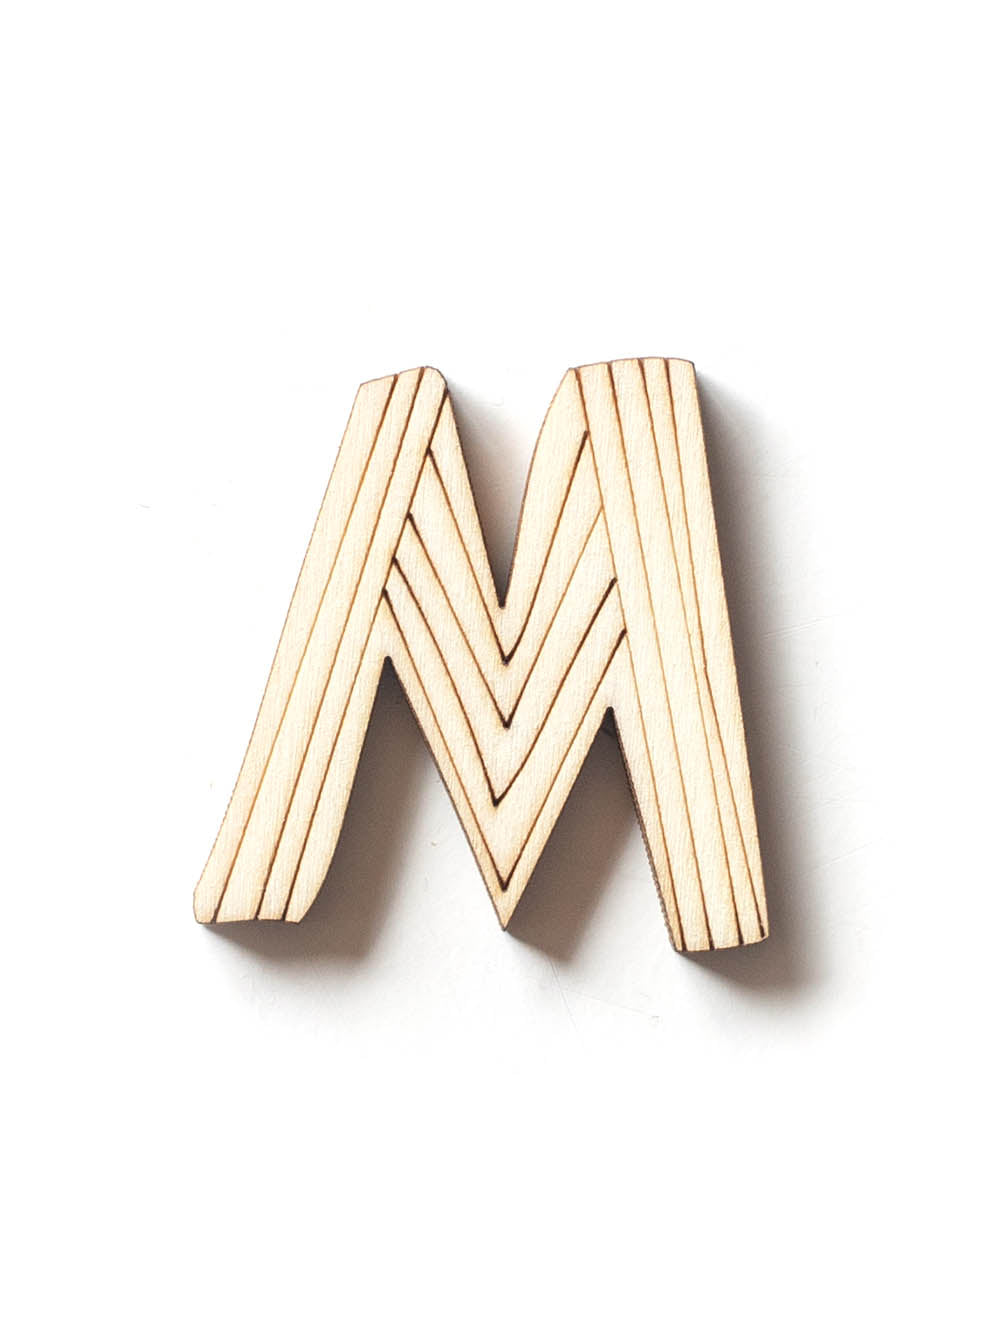 Holzbuchstabe M fürs Kinderzimmer mit Muster